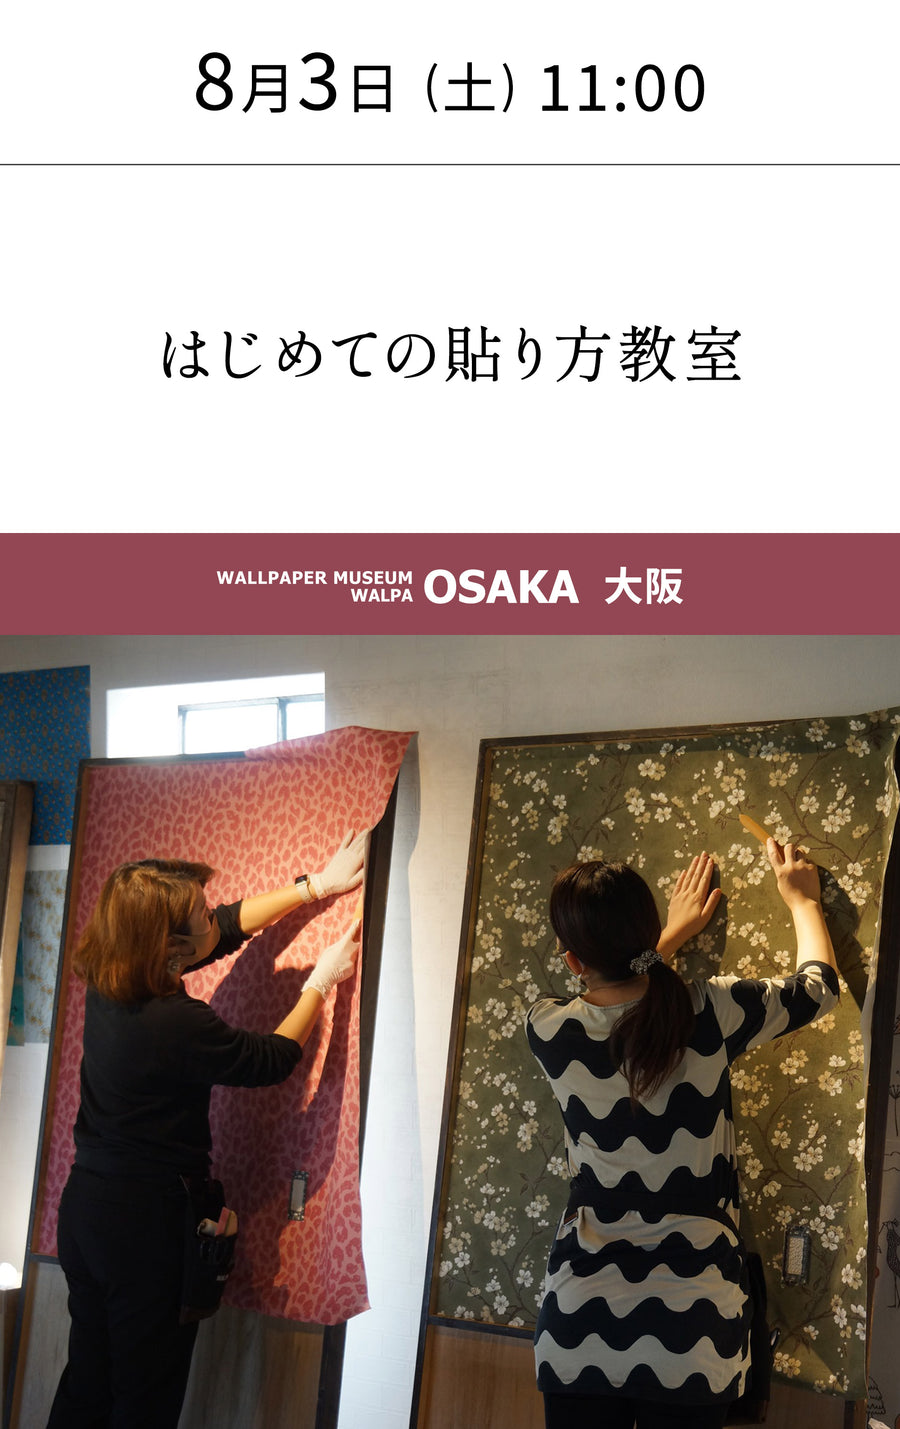 8月3日(土) 11:00～WALLPAPER MUSEUM WALPA / OSAKA ワークショップ 「はじめての貼り方教室」